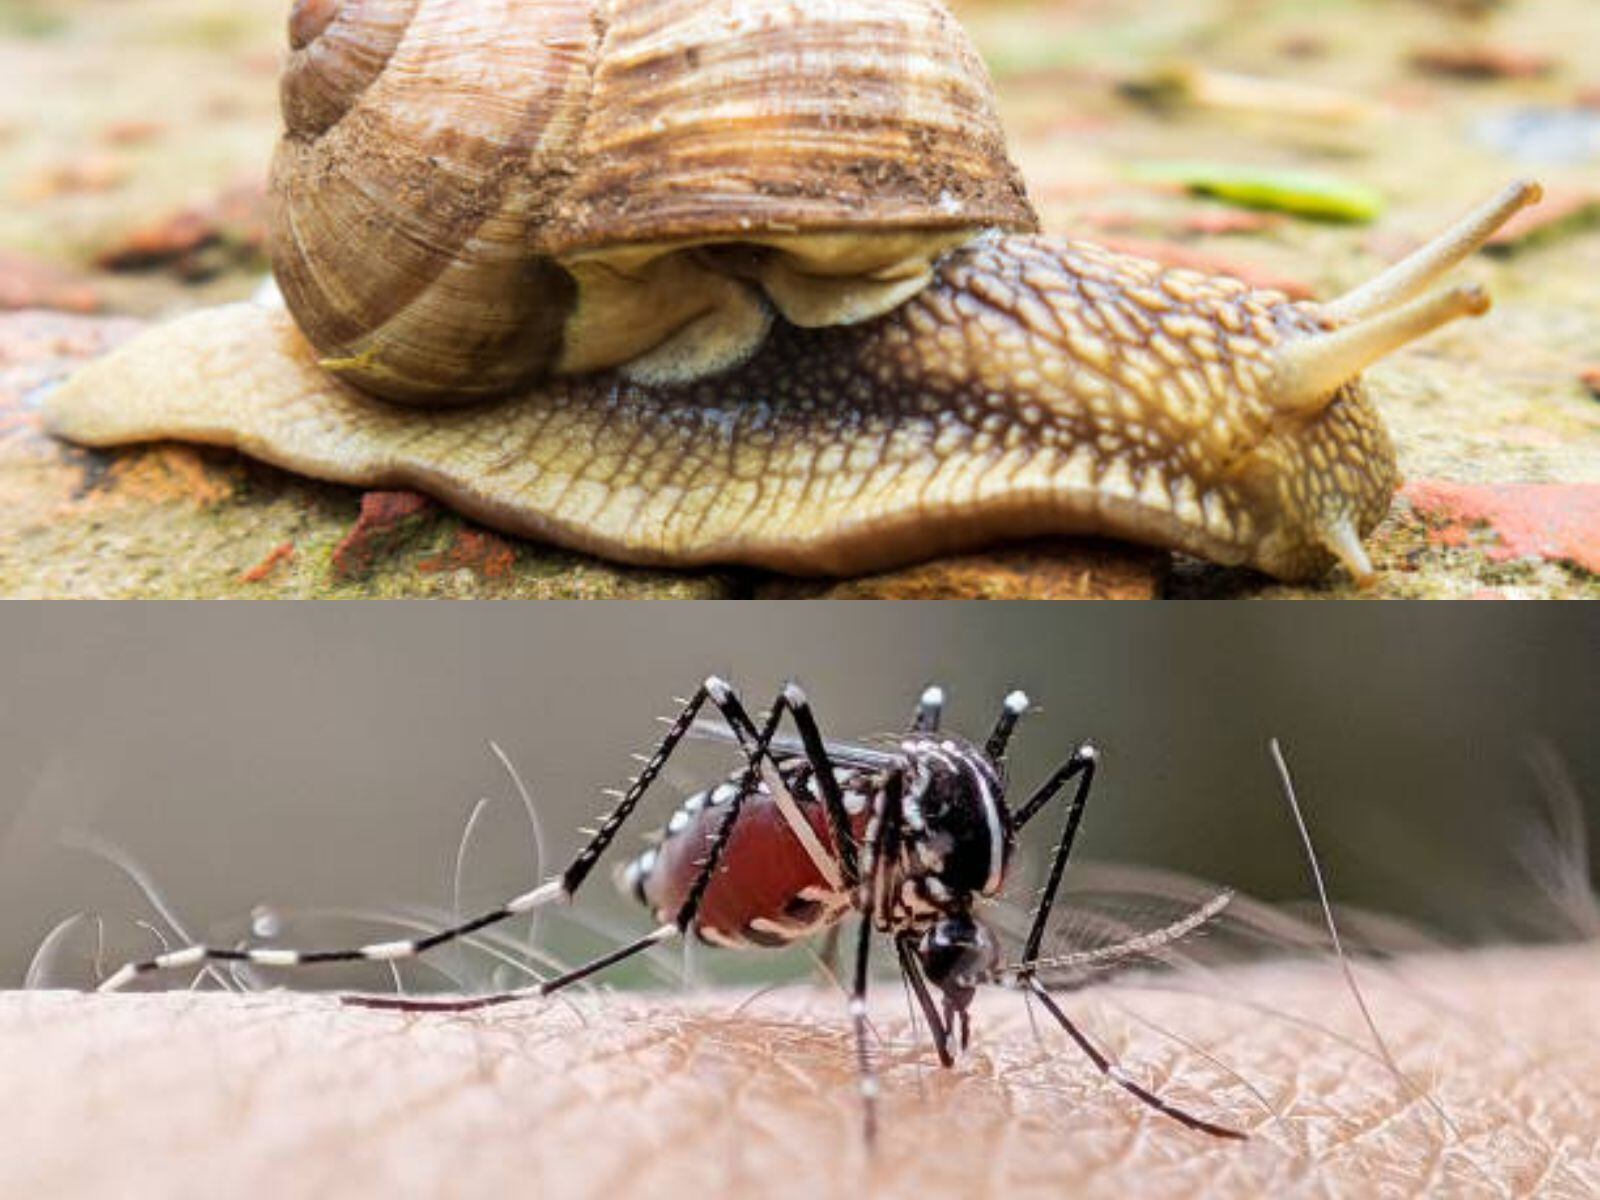 En los últimos años, la proliferación del caracol africano (Achatina fulica) y el mosquito del dengue (Aedes aegypti) ha representado un peligro creciente para la salud pública y los ecosistemas locales en diversas partes del mundo - crédito iStock